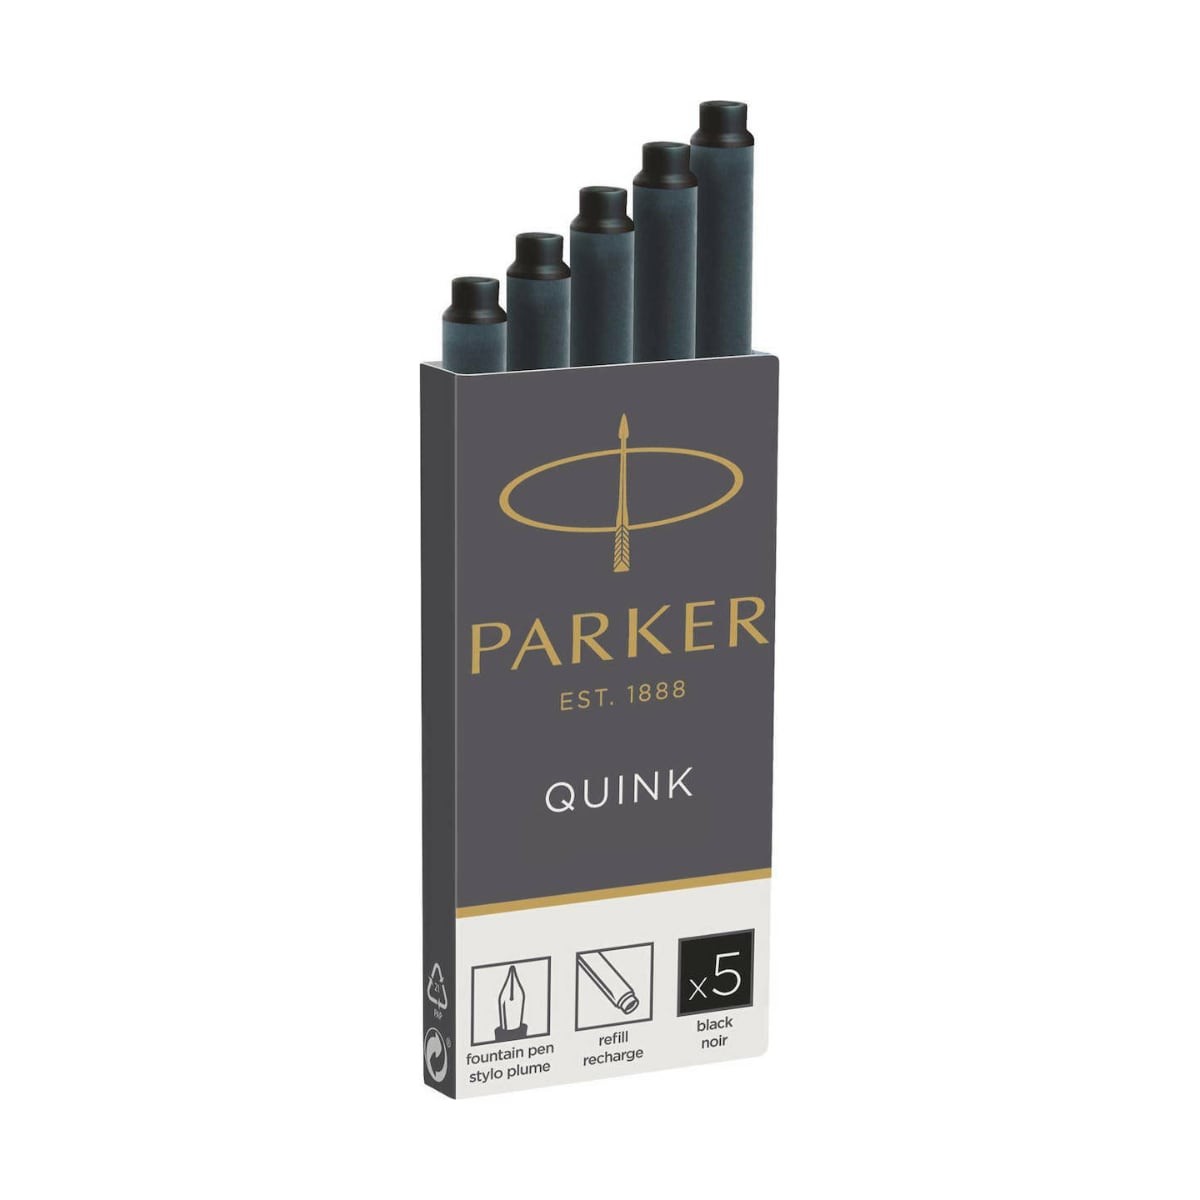 PARKER Αμπούλες Μελάνης Quink Ink 5T - Black